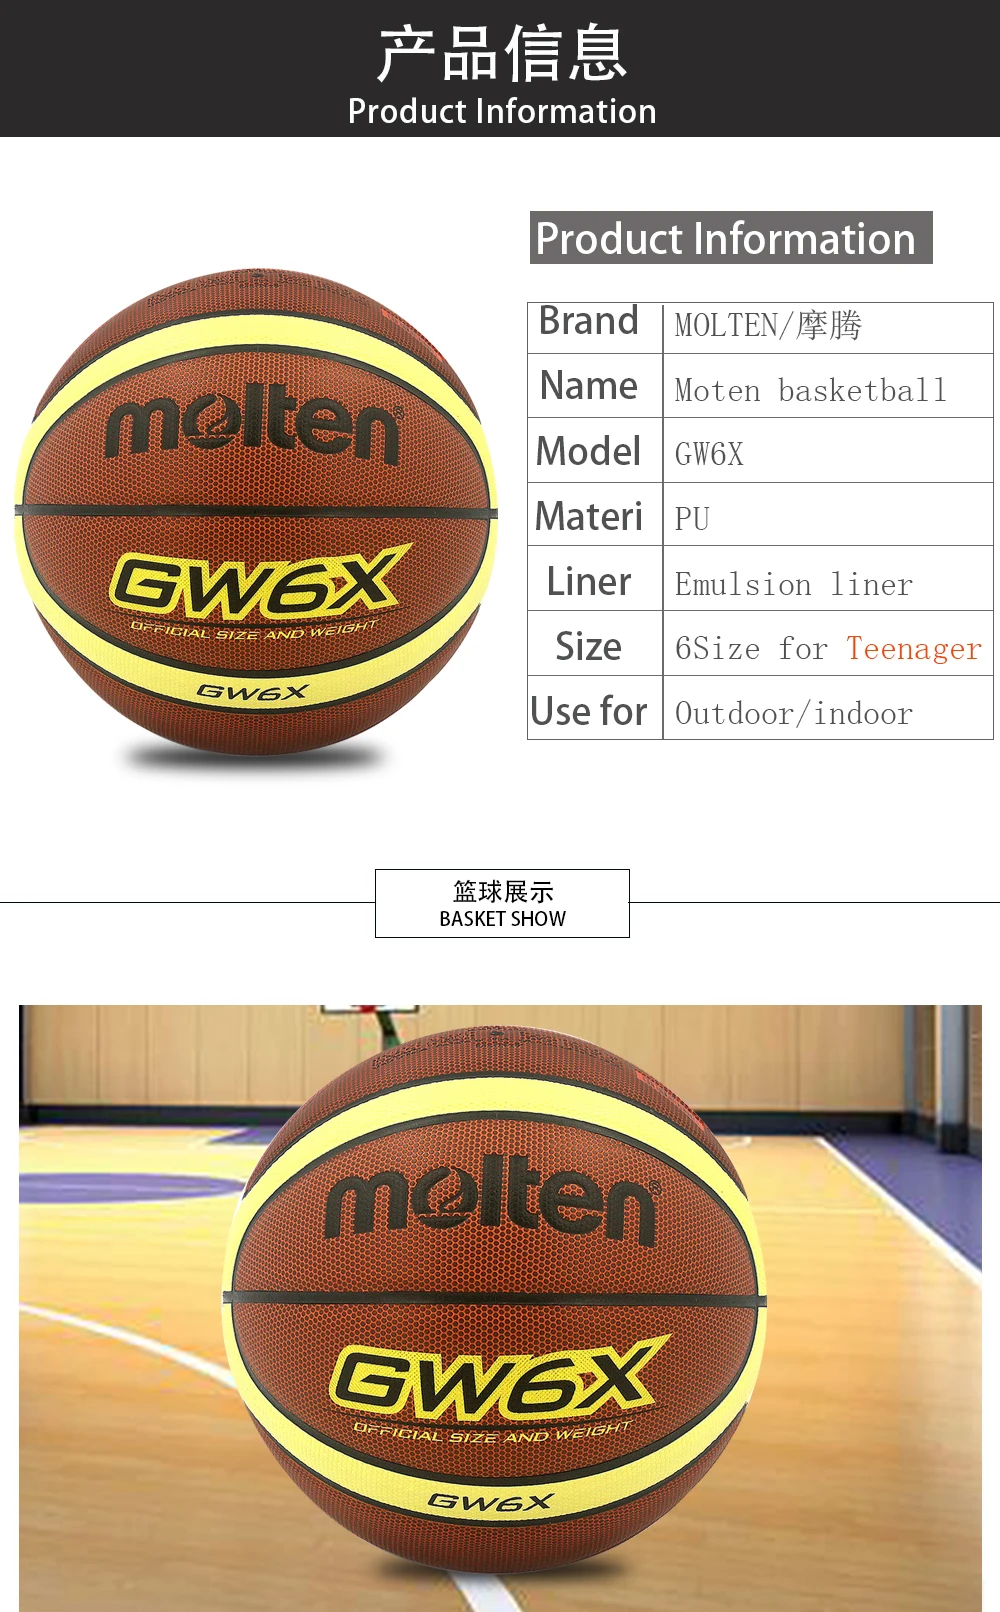 Оригинальный Molten GW5X GW6X GW7X Крытый открытый для мужчин's Баскетбол мяч PU Materia Size5, 6,7 баскетбол бесплатная с Сетчатая Сумка + иглы